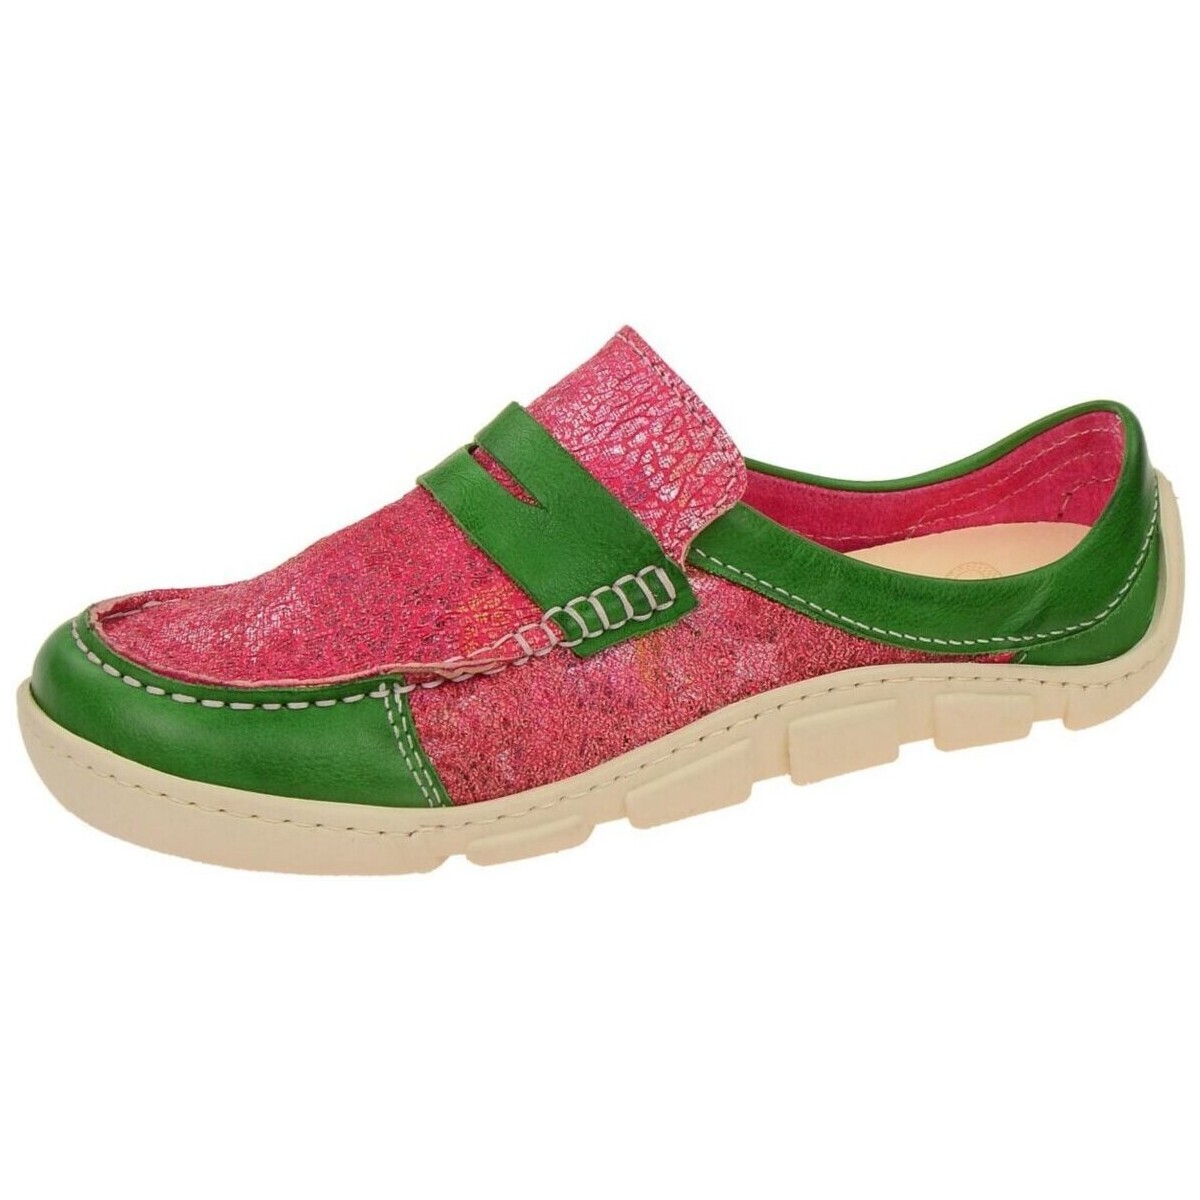 Schuhe Damen Slipper Eject Slipper Flight Schuhe grün Slipper 16161/1 green-red Rot